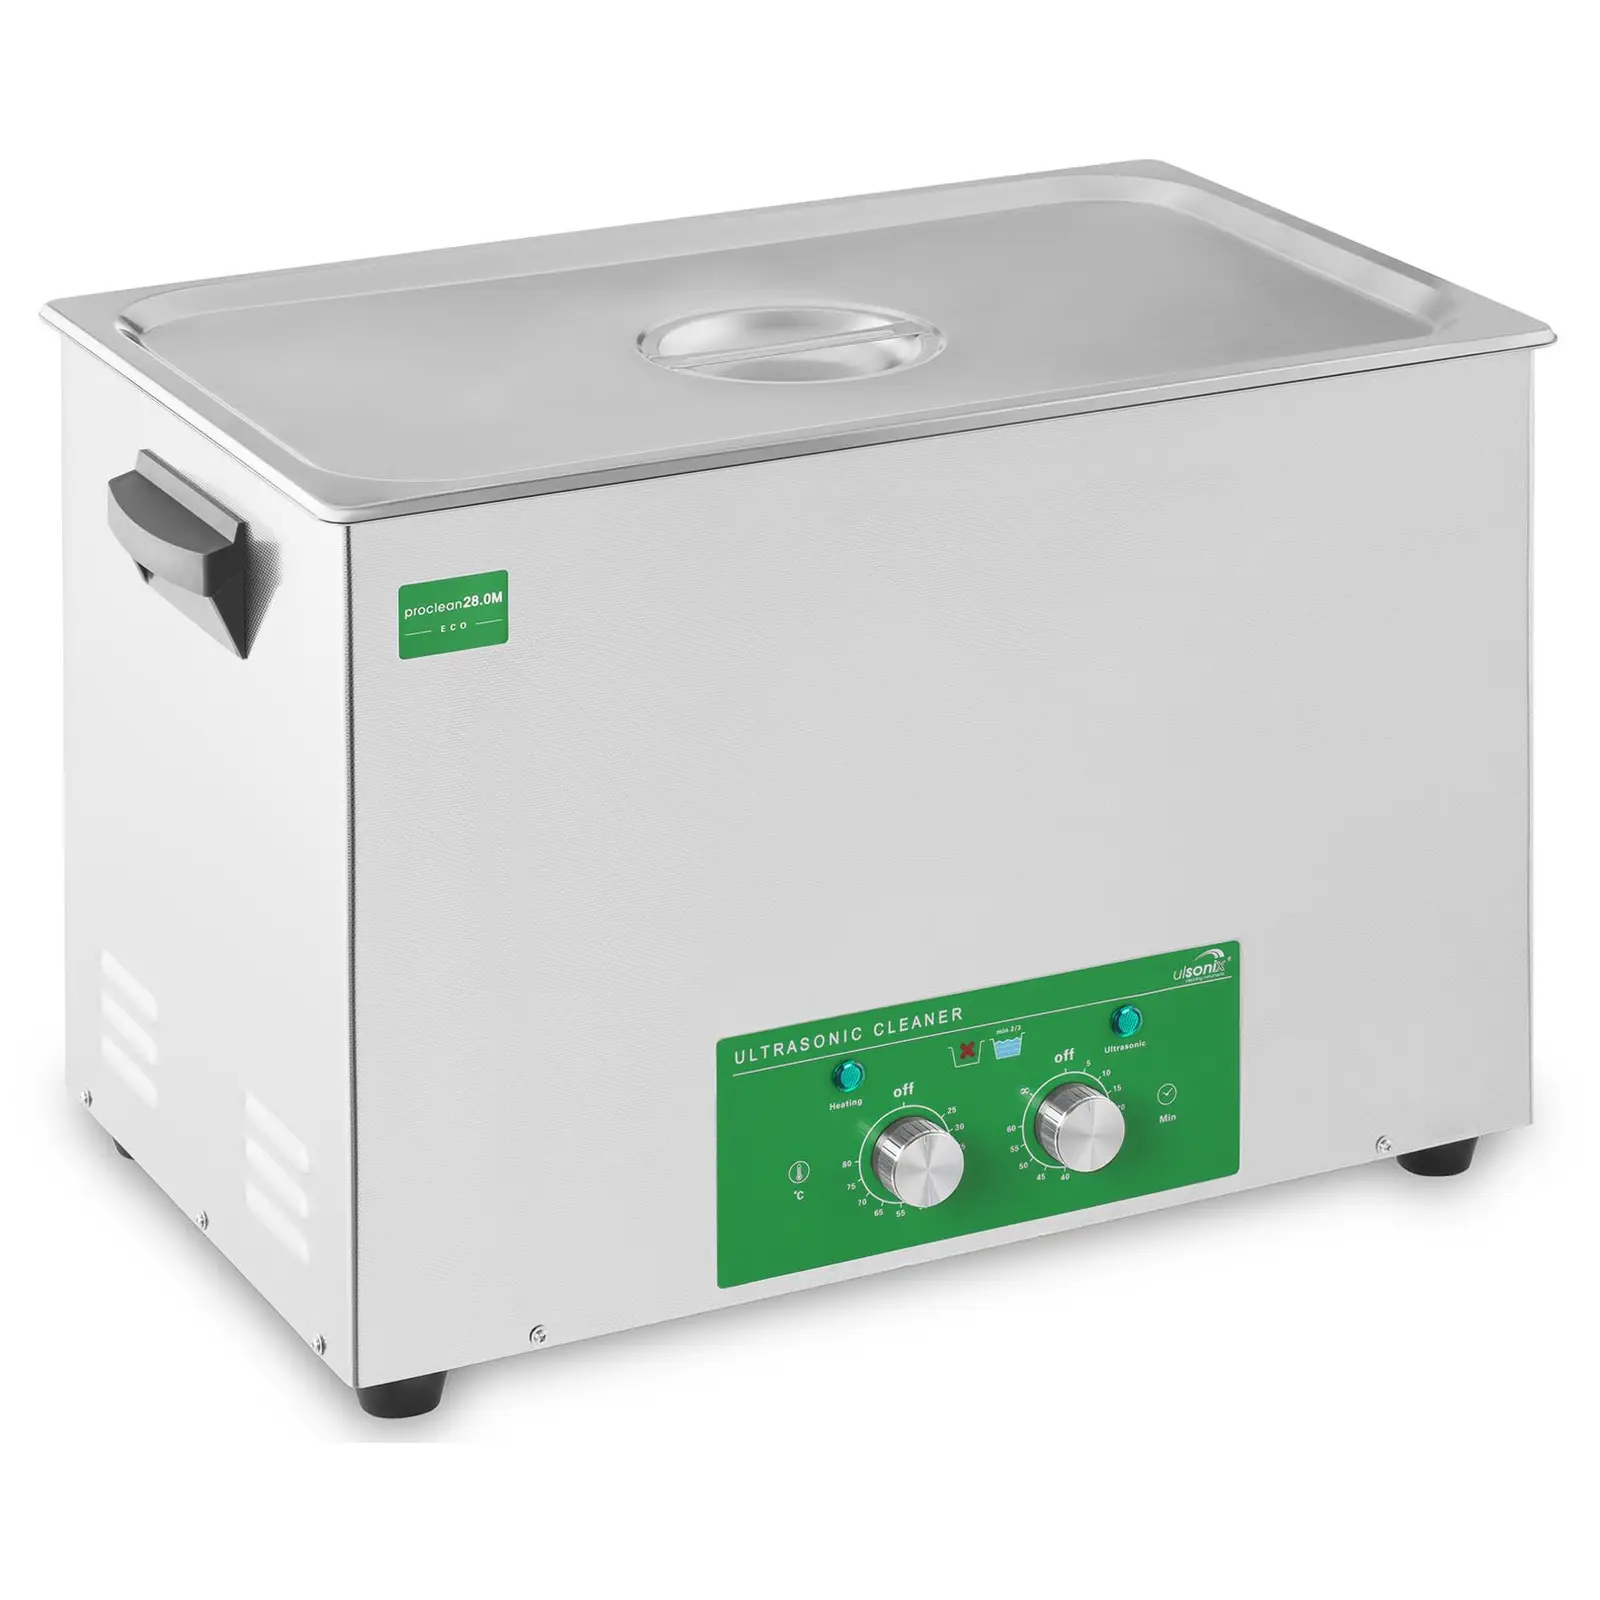 Ultrahangos tisztító - 28 liter - 480 W - Basic Eco